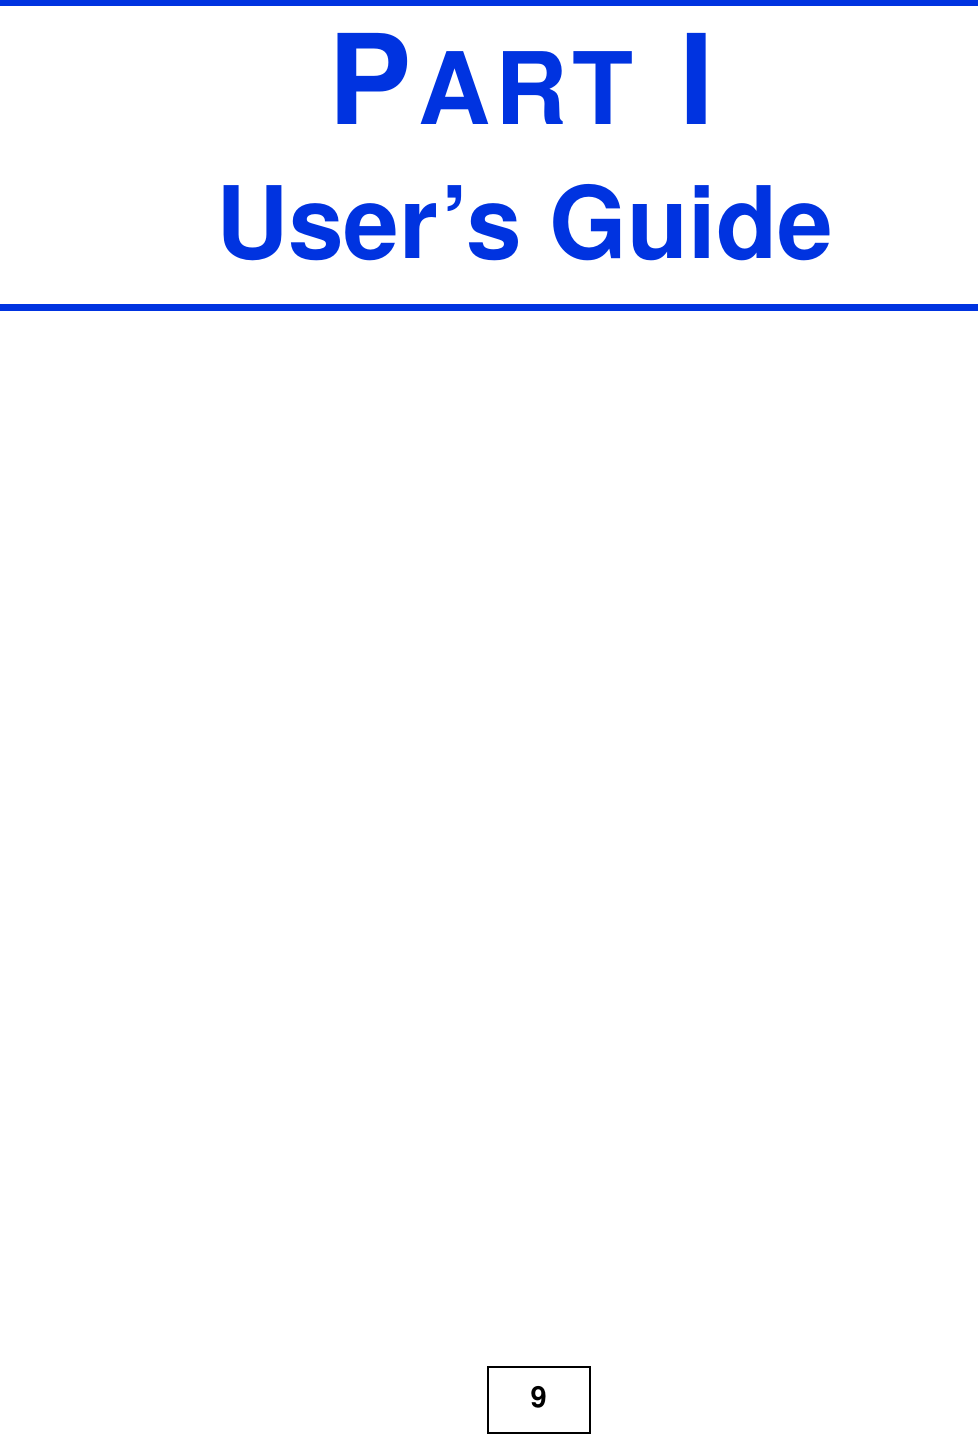 9PART IUser’s Guide